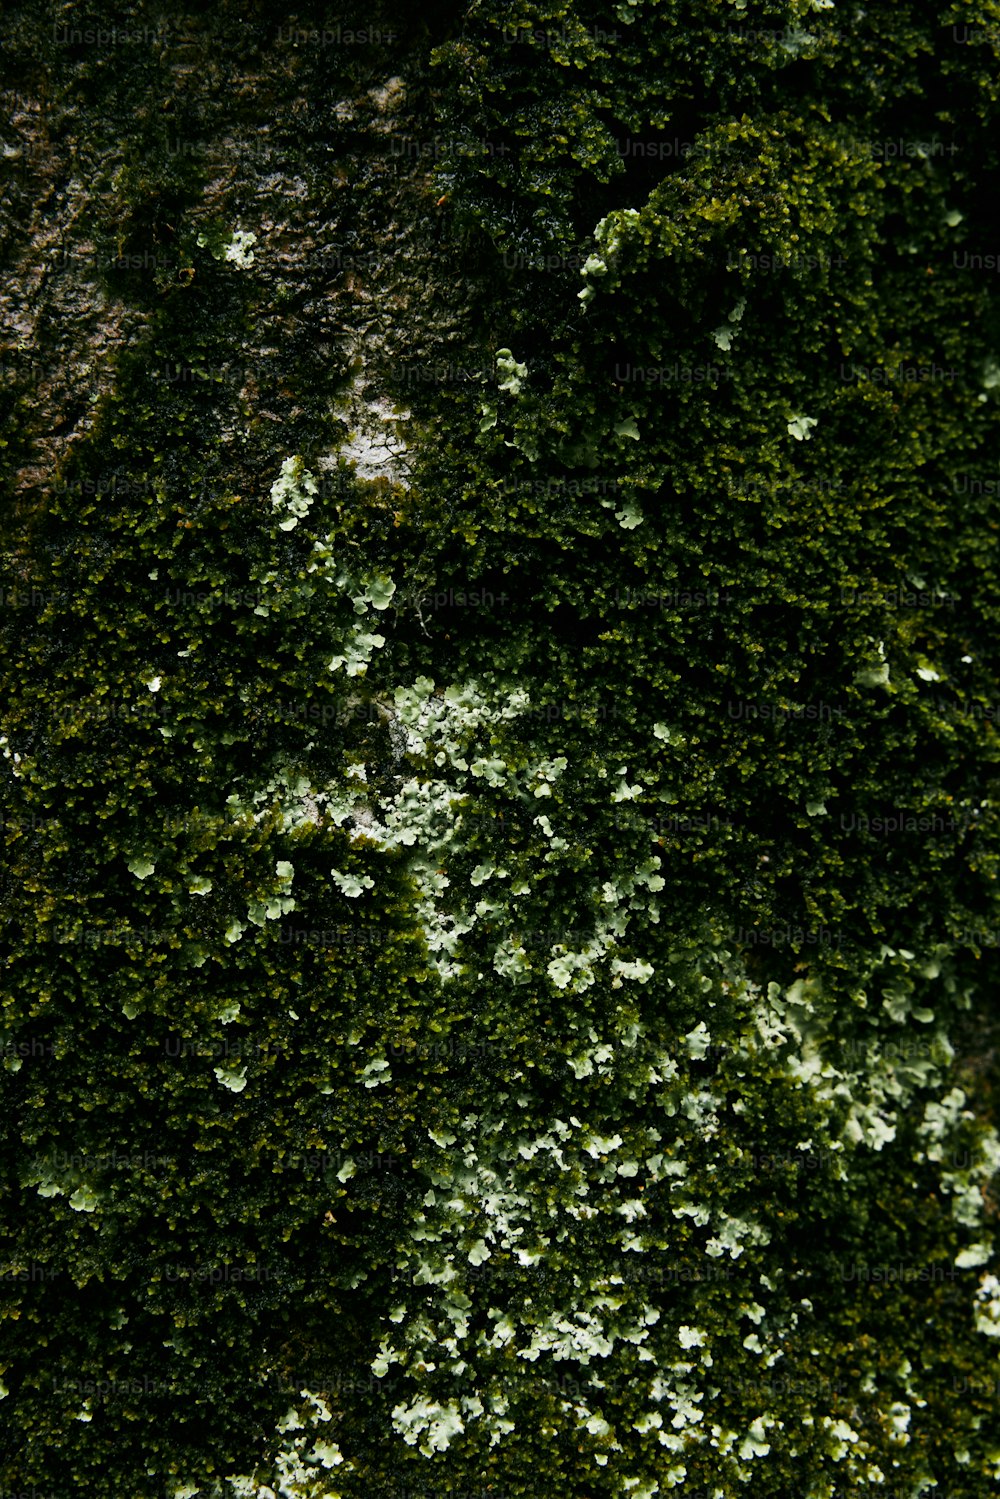 um close up de uma parede coberta de musgo